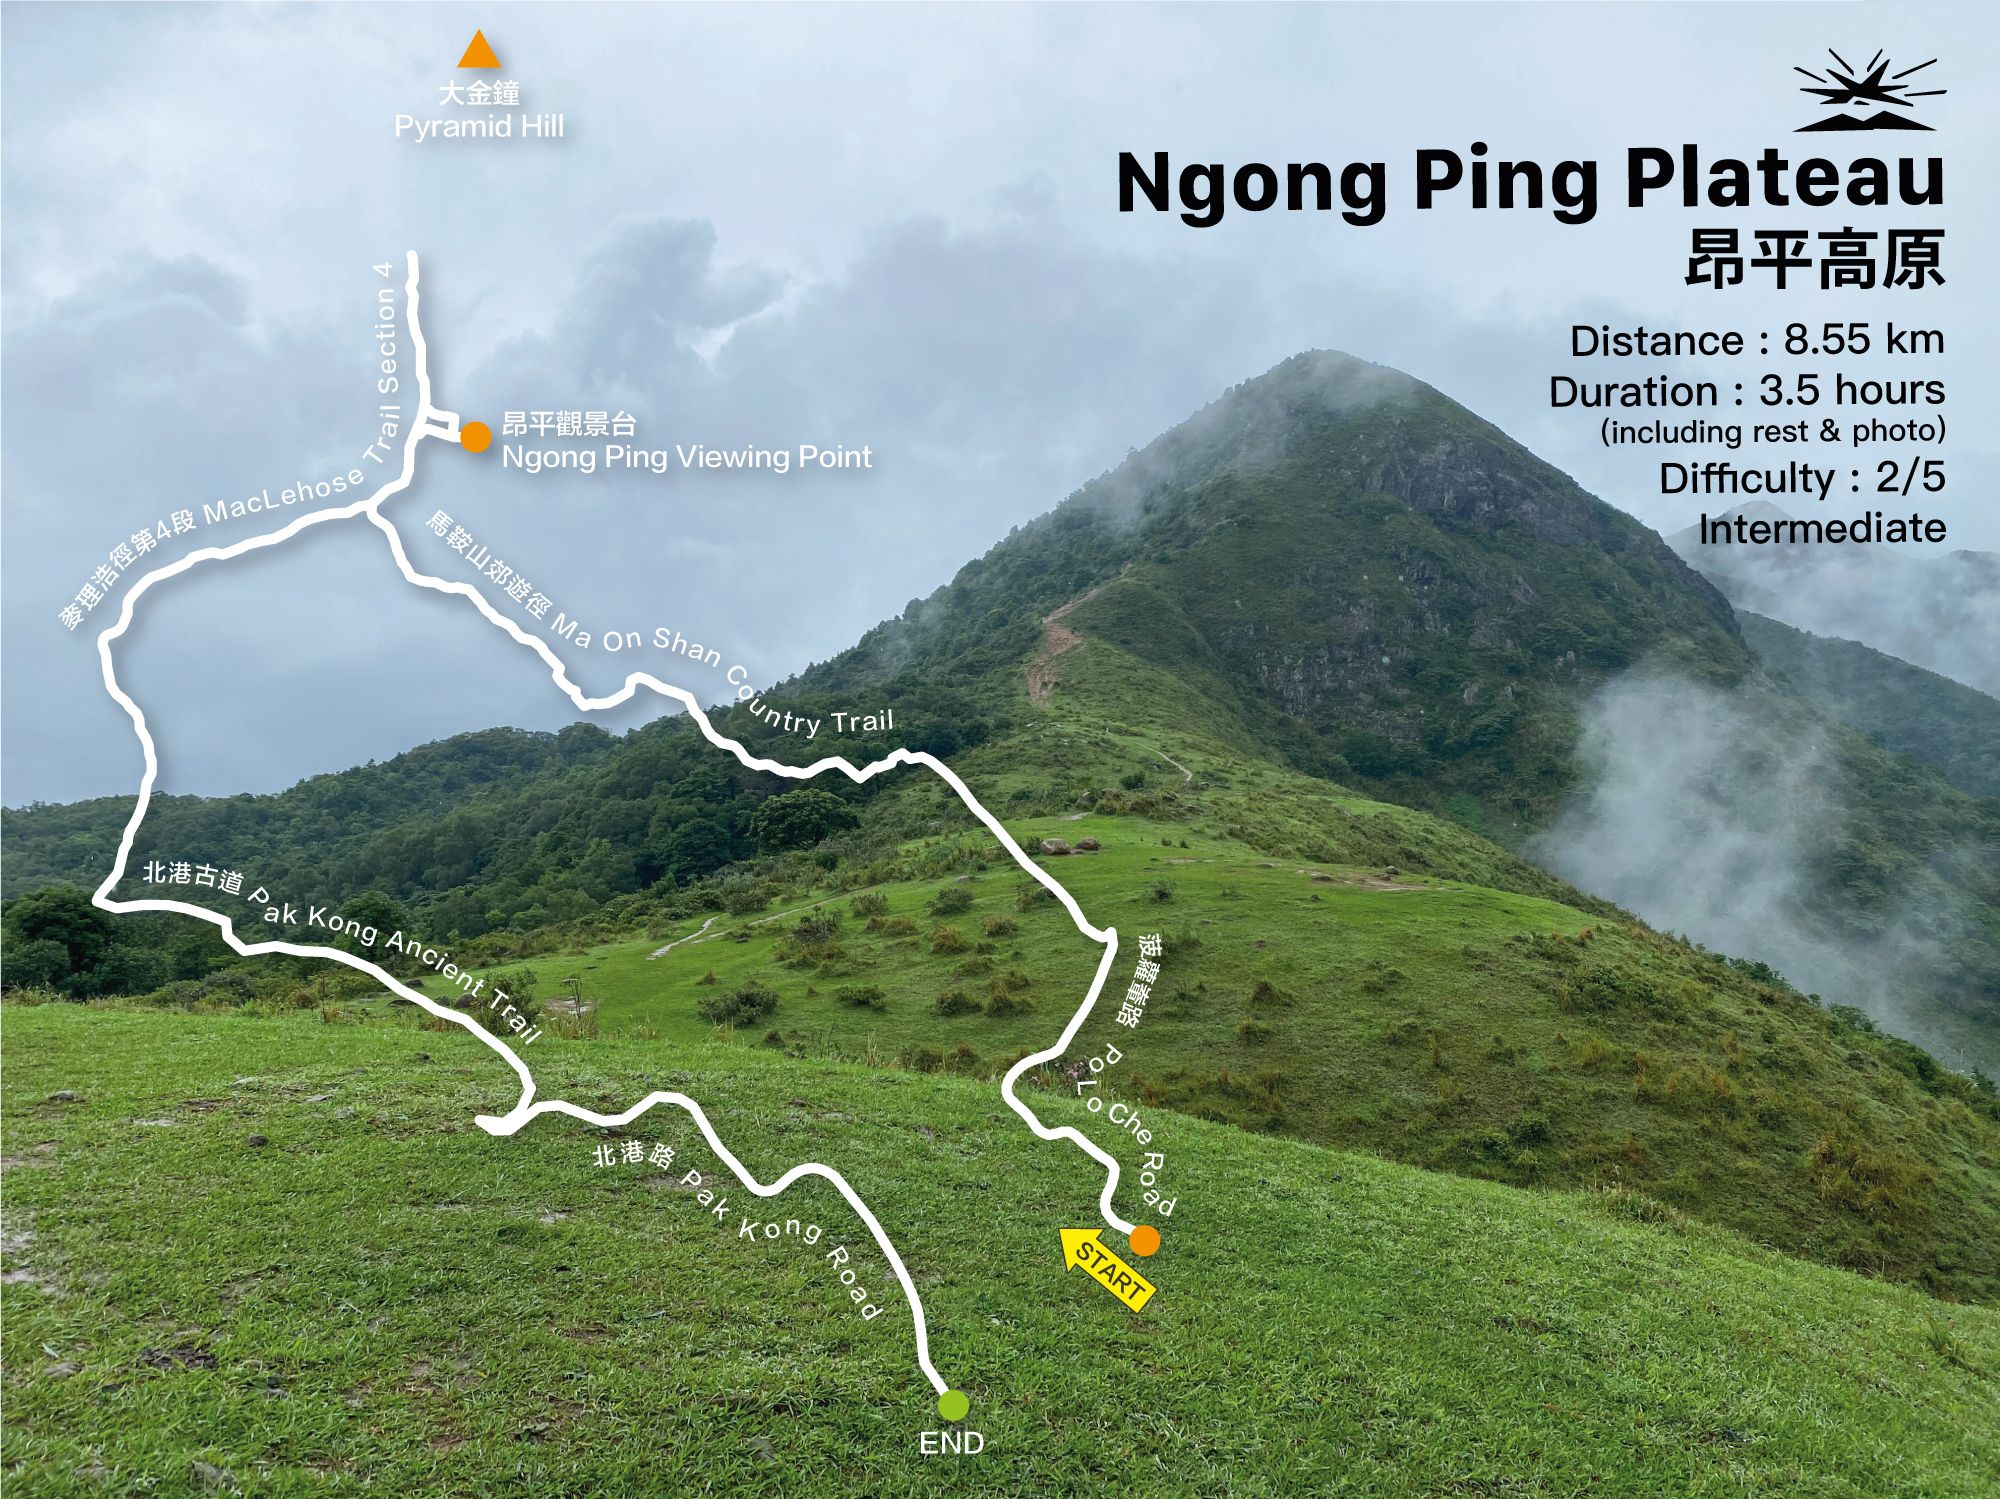 Ngong Ping Plateau